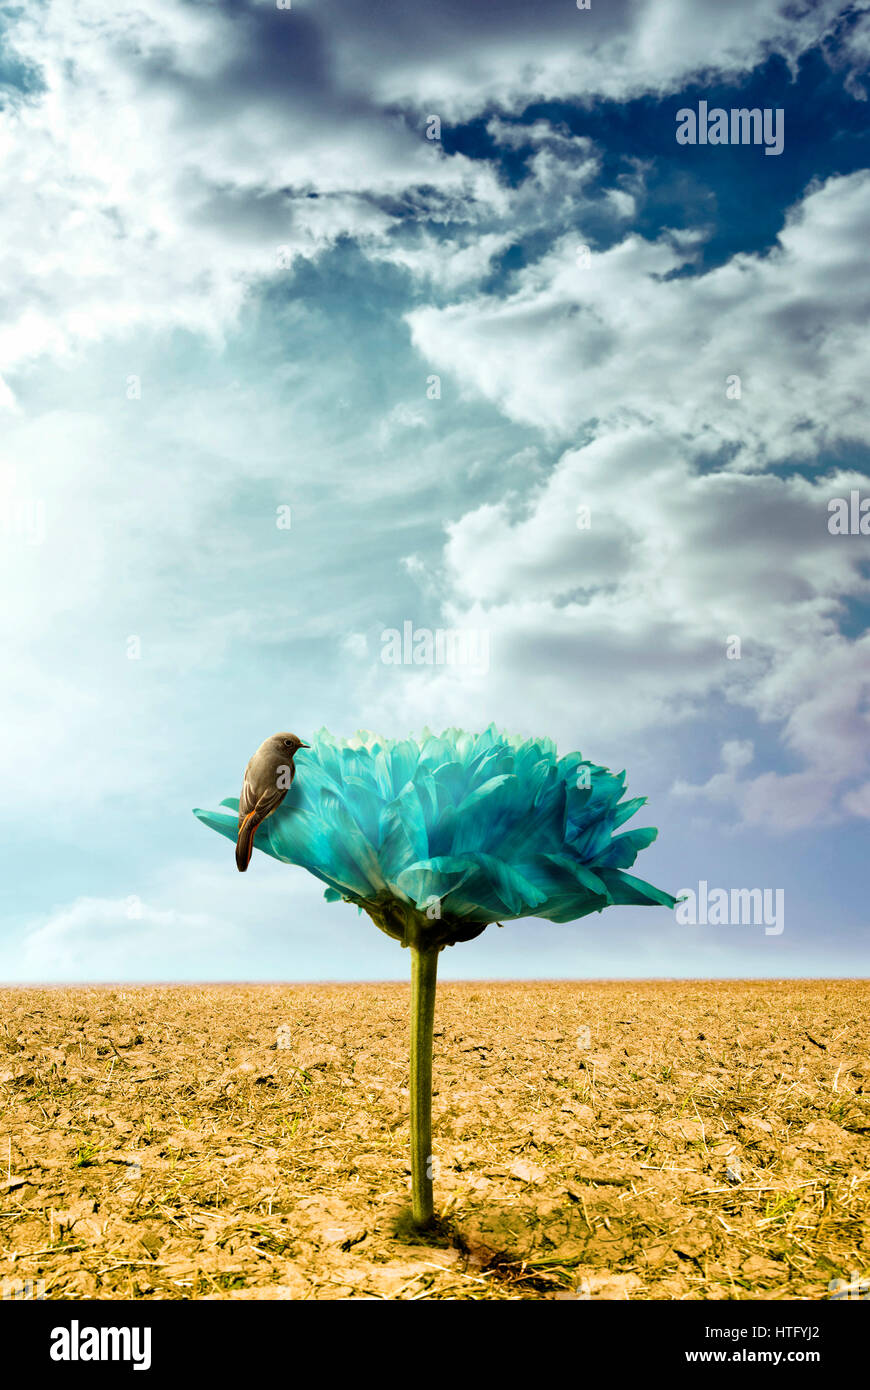 Bird debout sur une fleur géante, fruit d'un sol sec. Banque D'Images